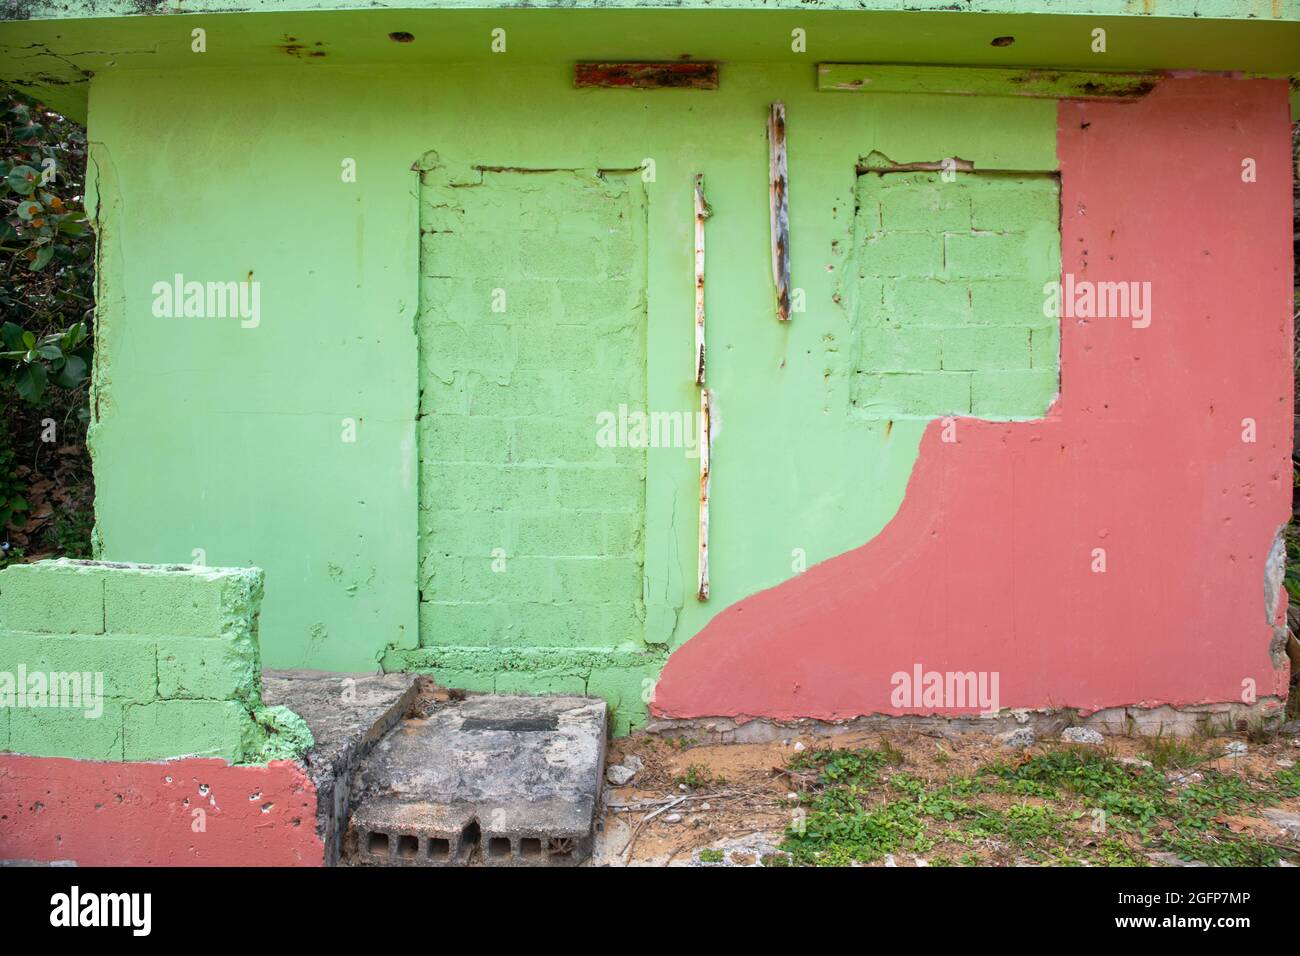 Ein abgenutztes Haus in Grün und Pink - Puerto Rico Stockfoto